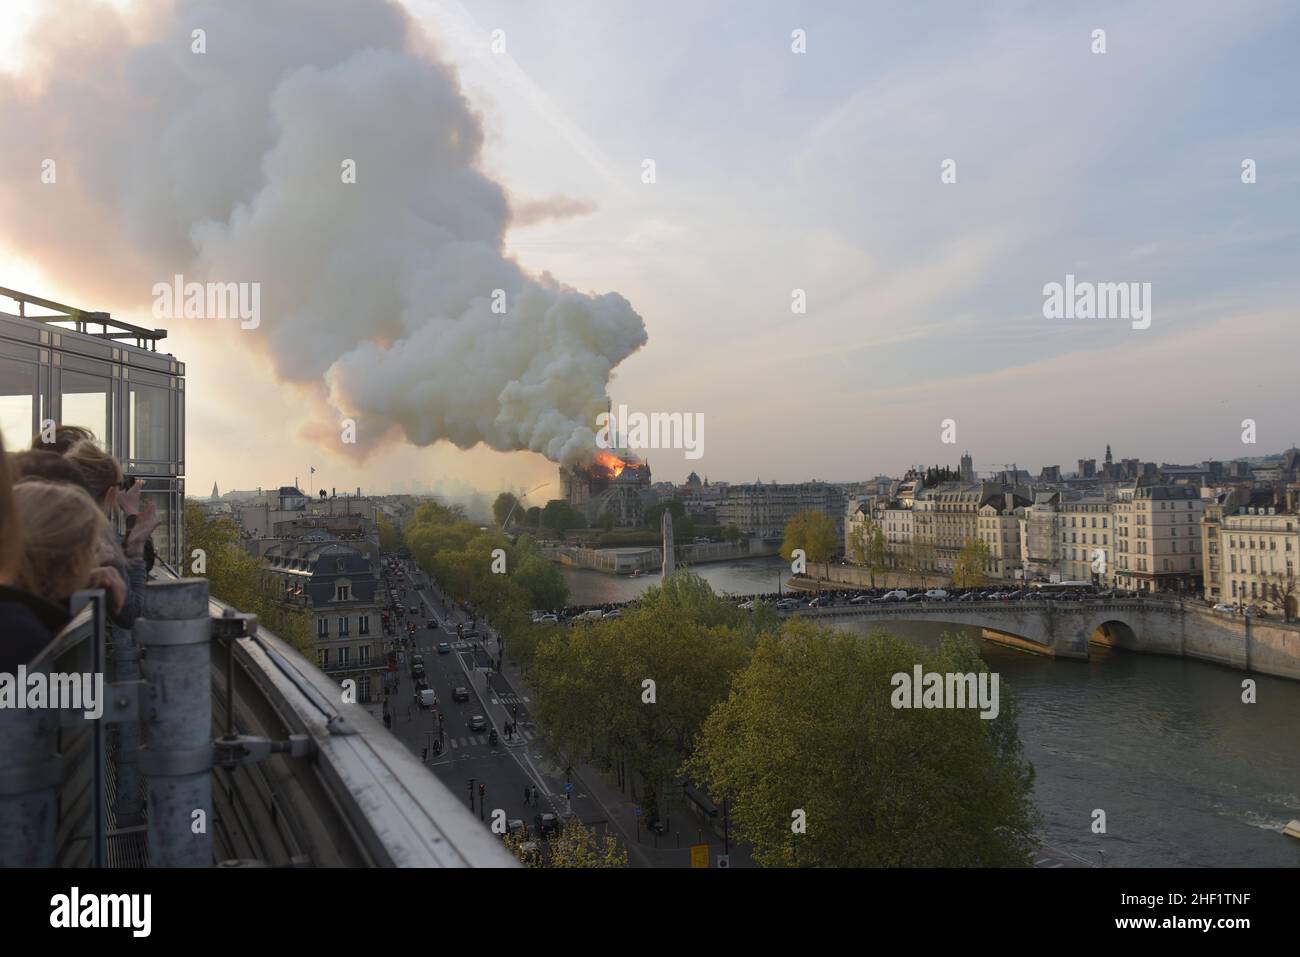 Incendie de la cathédrale Notre Dame de Paris le 15 avril 2019. Fire at Notre Dame Cathedral in Paris on 15 April 2019. Stock Photo